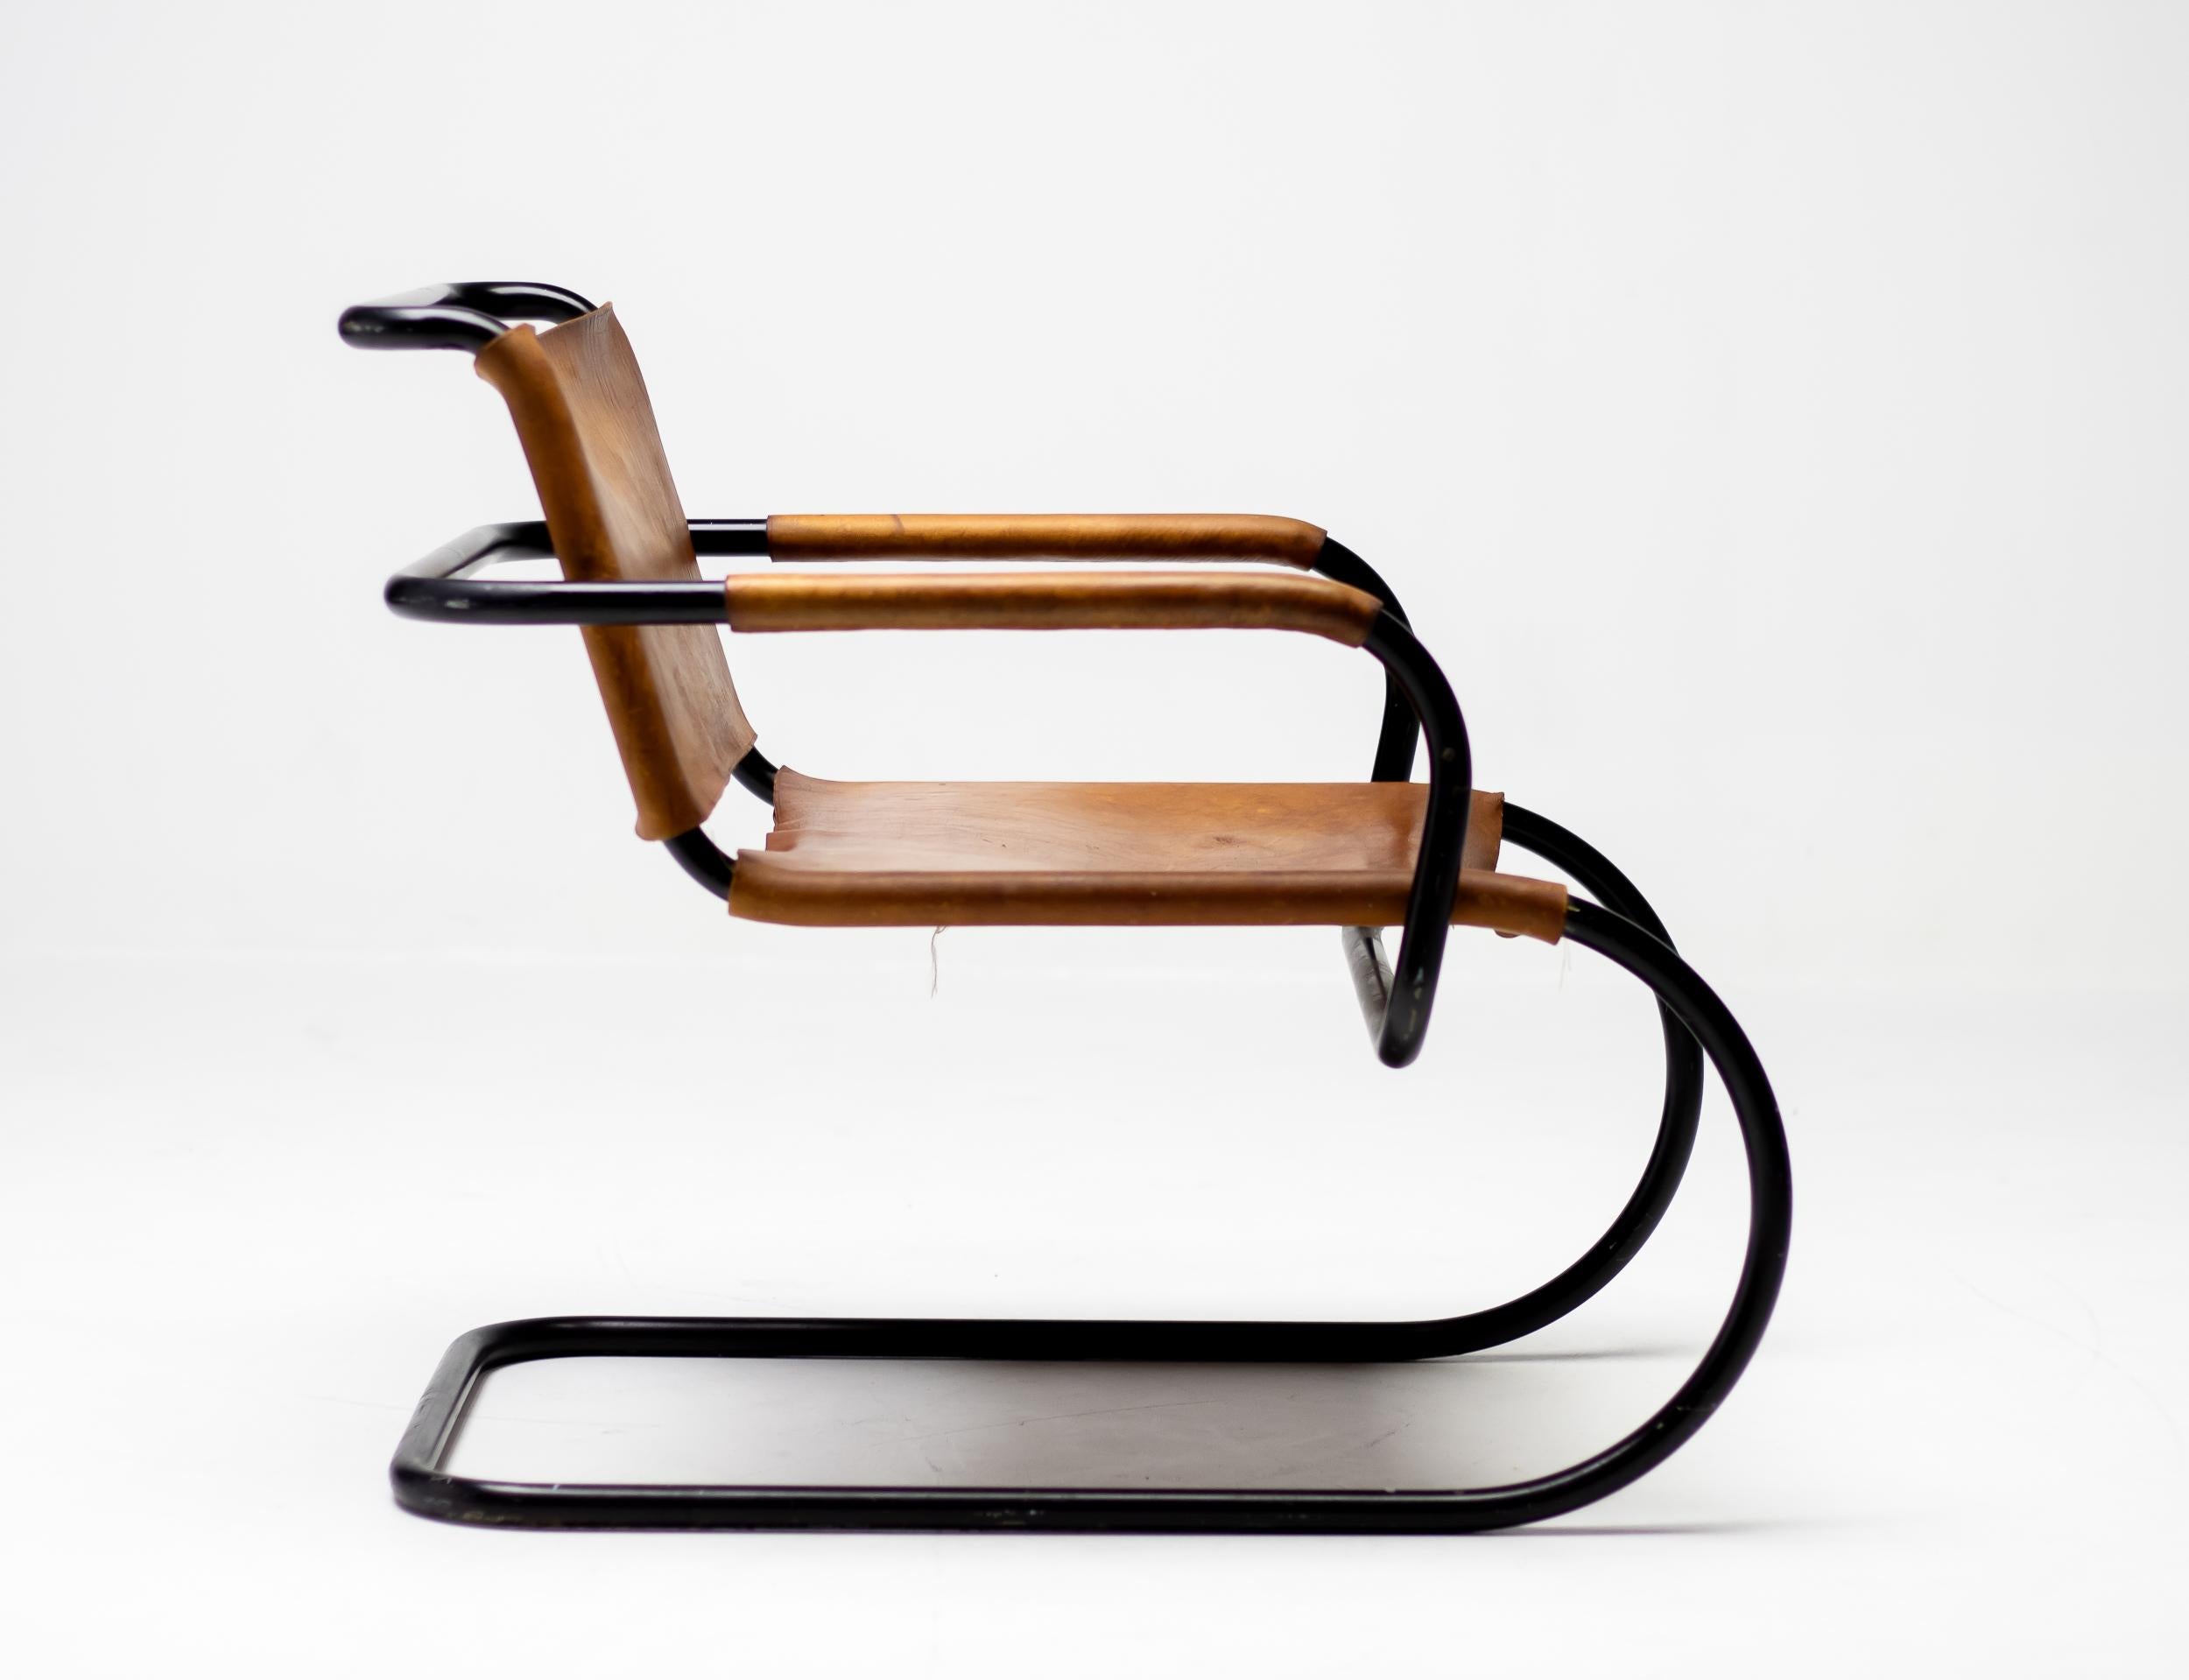 Röhrenförmiger Sessel, entworfen von Franco Albini für die Triennale in Mailand 1933.
Der originelle schwarz emaillierte Rahmen unterstreicht die grafischen Qualitäten dieses Designs.
Der Sitz und die Rückenlehne aus Naturleder sind noch in einem